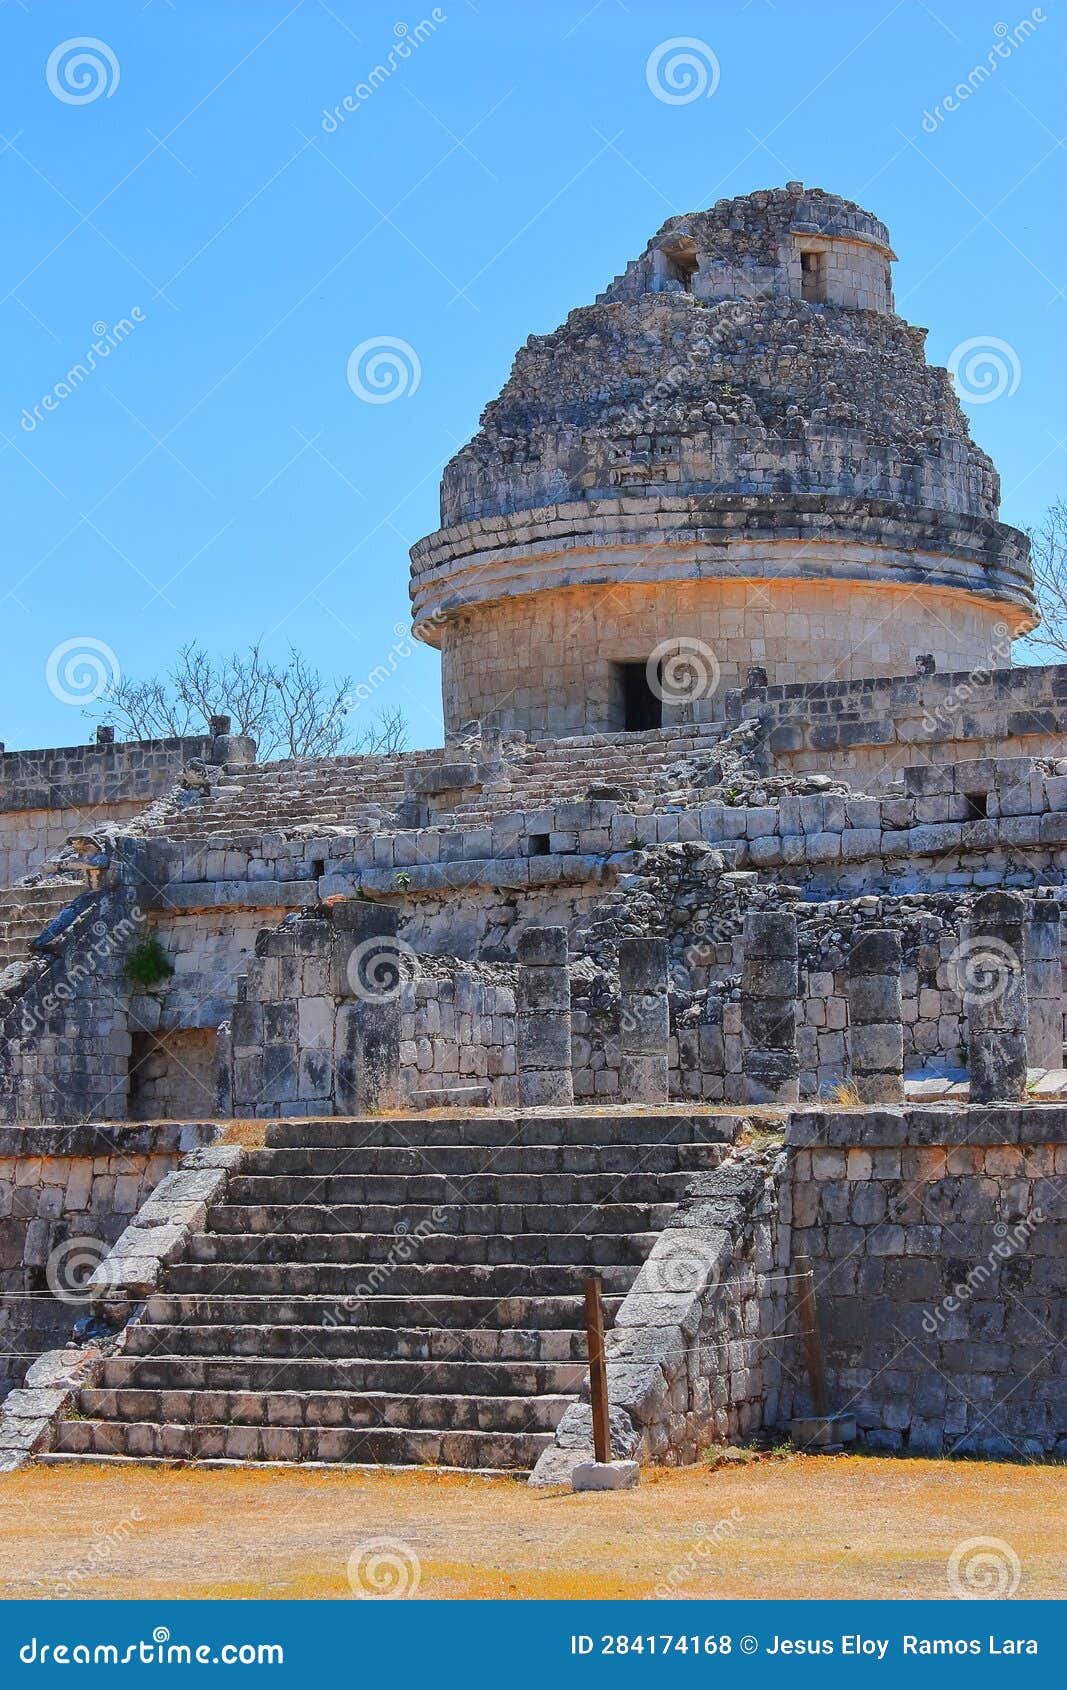 mayan observatory in chichenitza pyramids in yucatan, mexico xvii